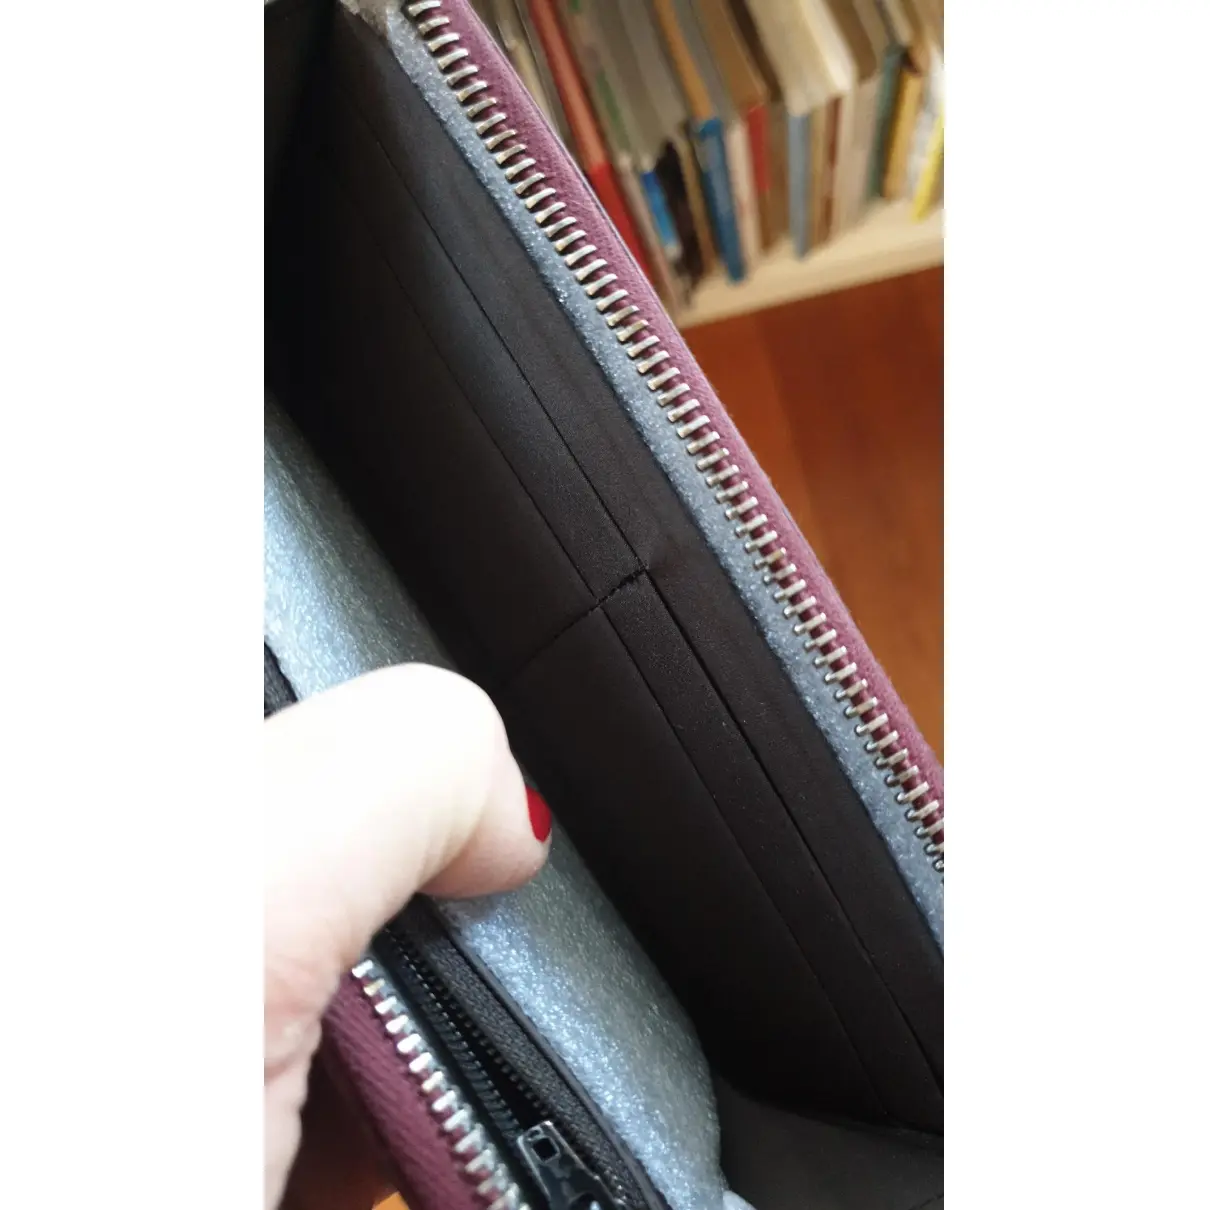 Leather wallet Miu Miu - Vintage